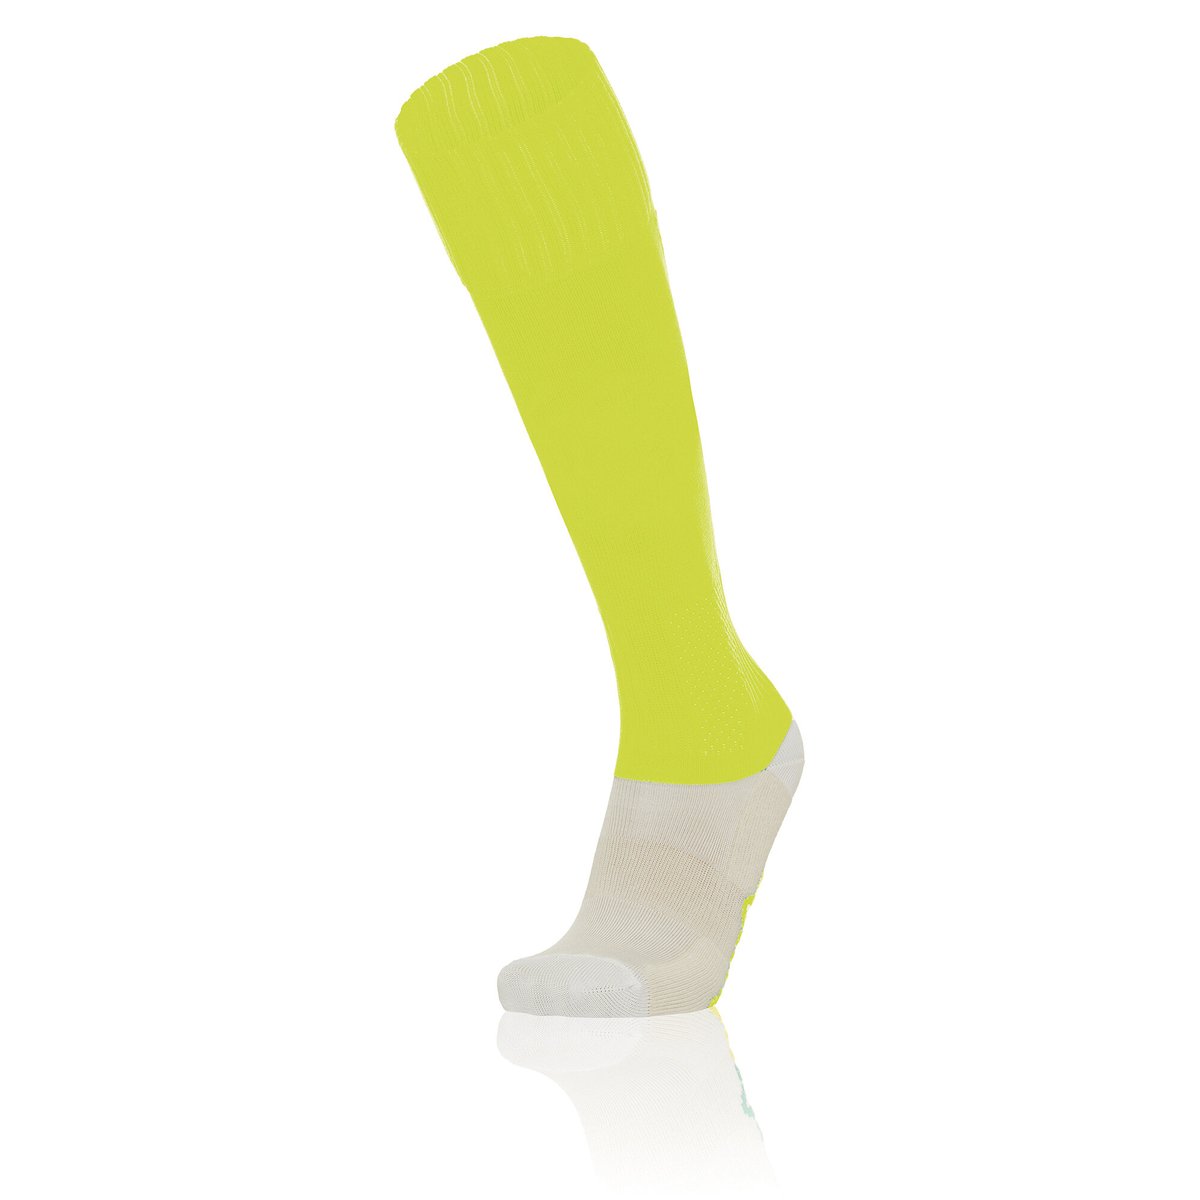 Macron Nitro II Match Sock - Neon Yellow (Pack of 5)